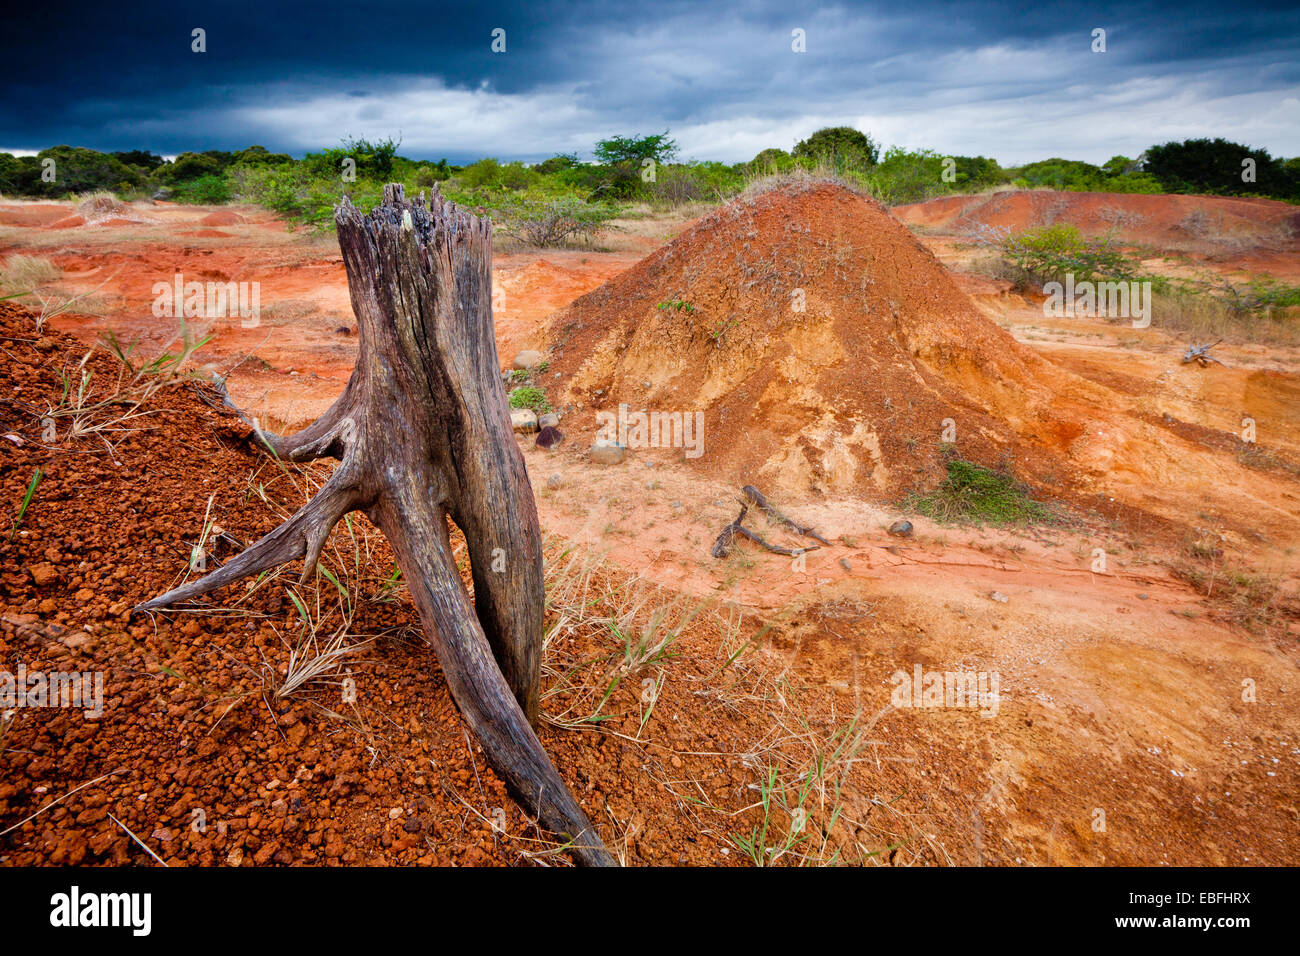 Albero secco e suoli erosi in Sarigua national park (deserto), Herrera provincia, Repubblica di Panama. Foto Stock